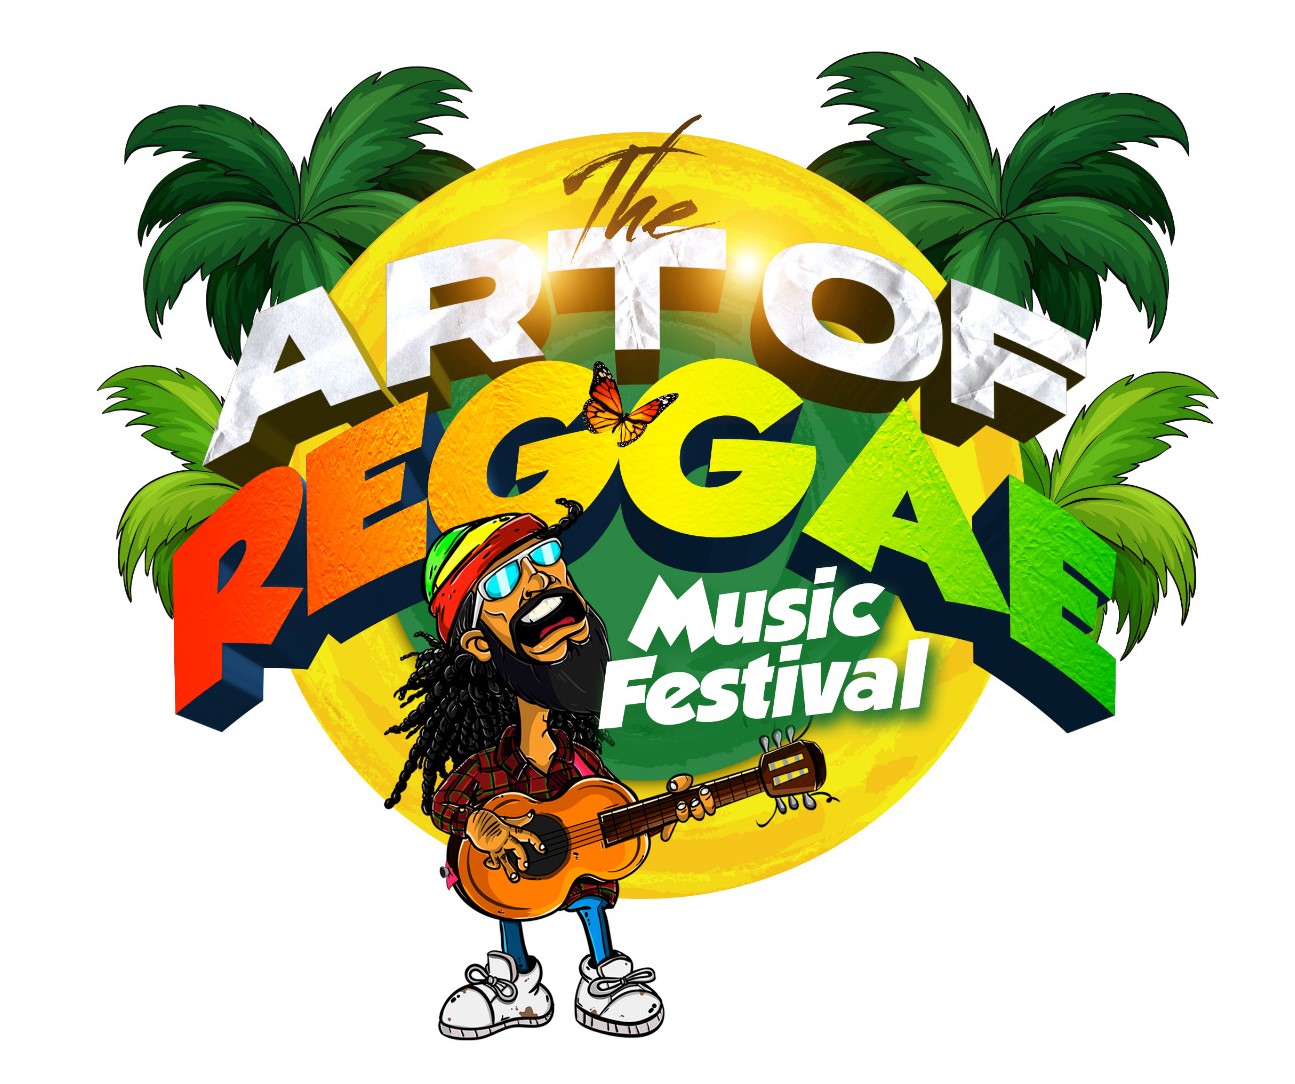 The Art of Reggae Music Festival